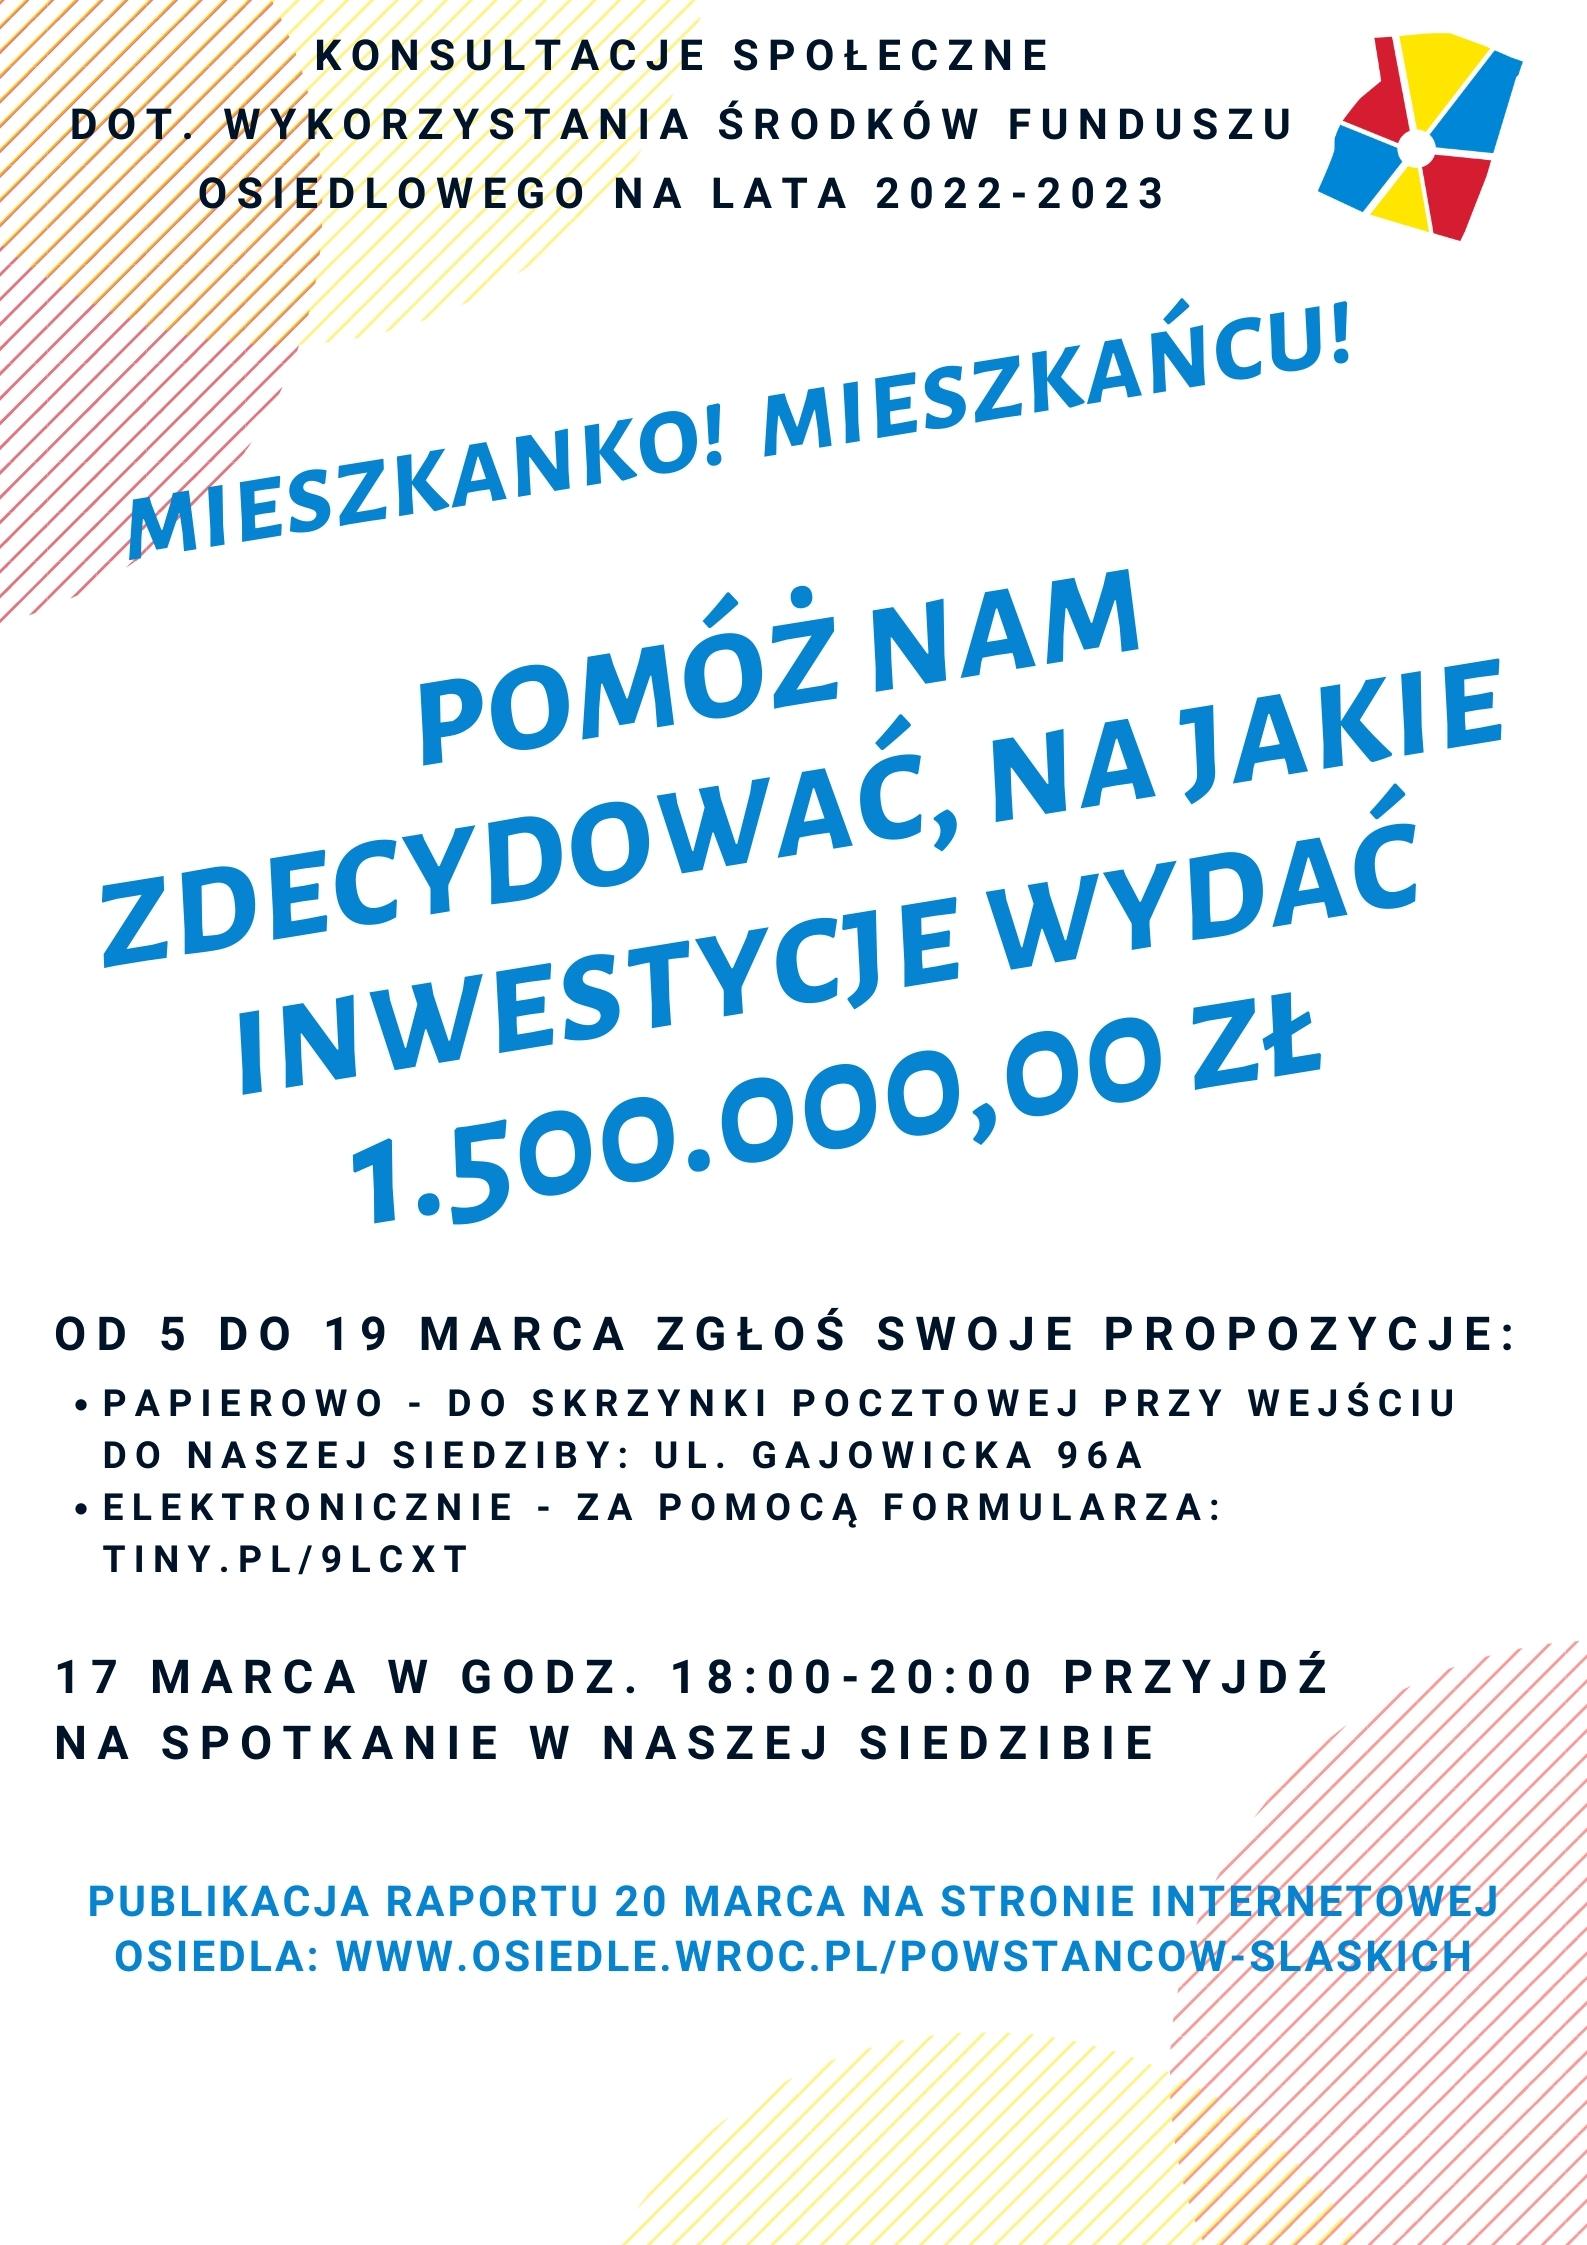 plakat promujący udział w konsultachach społecznych edycji Funduszu Osiedlowego na lata 2022-2023